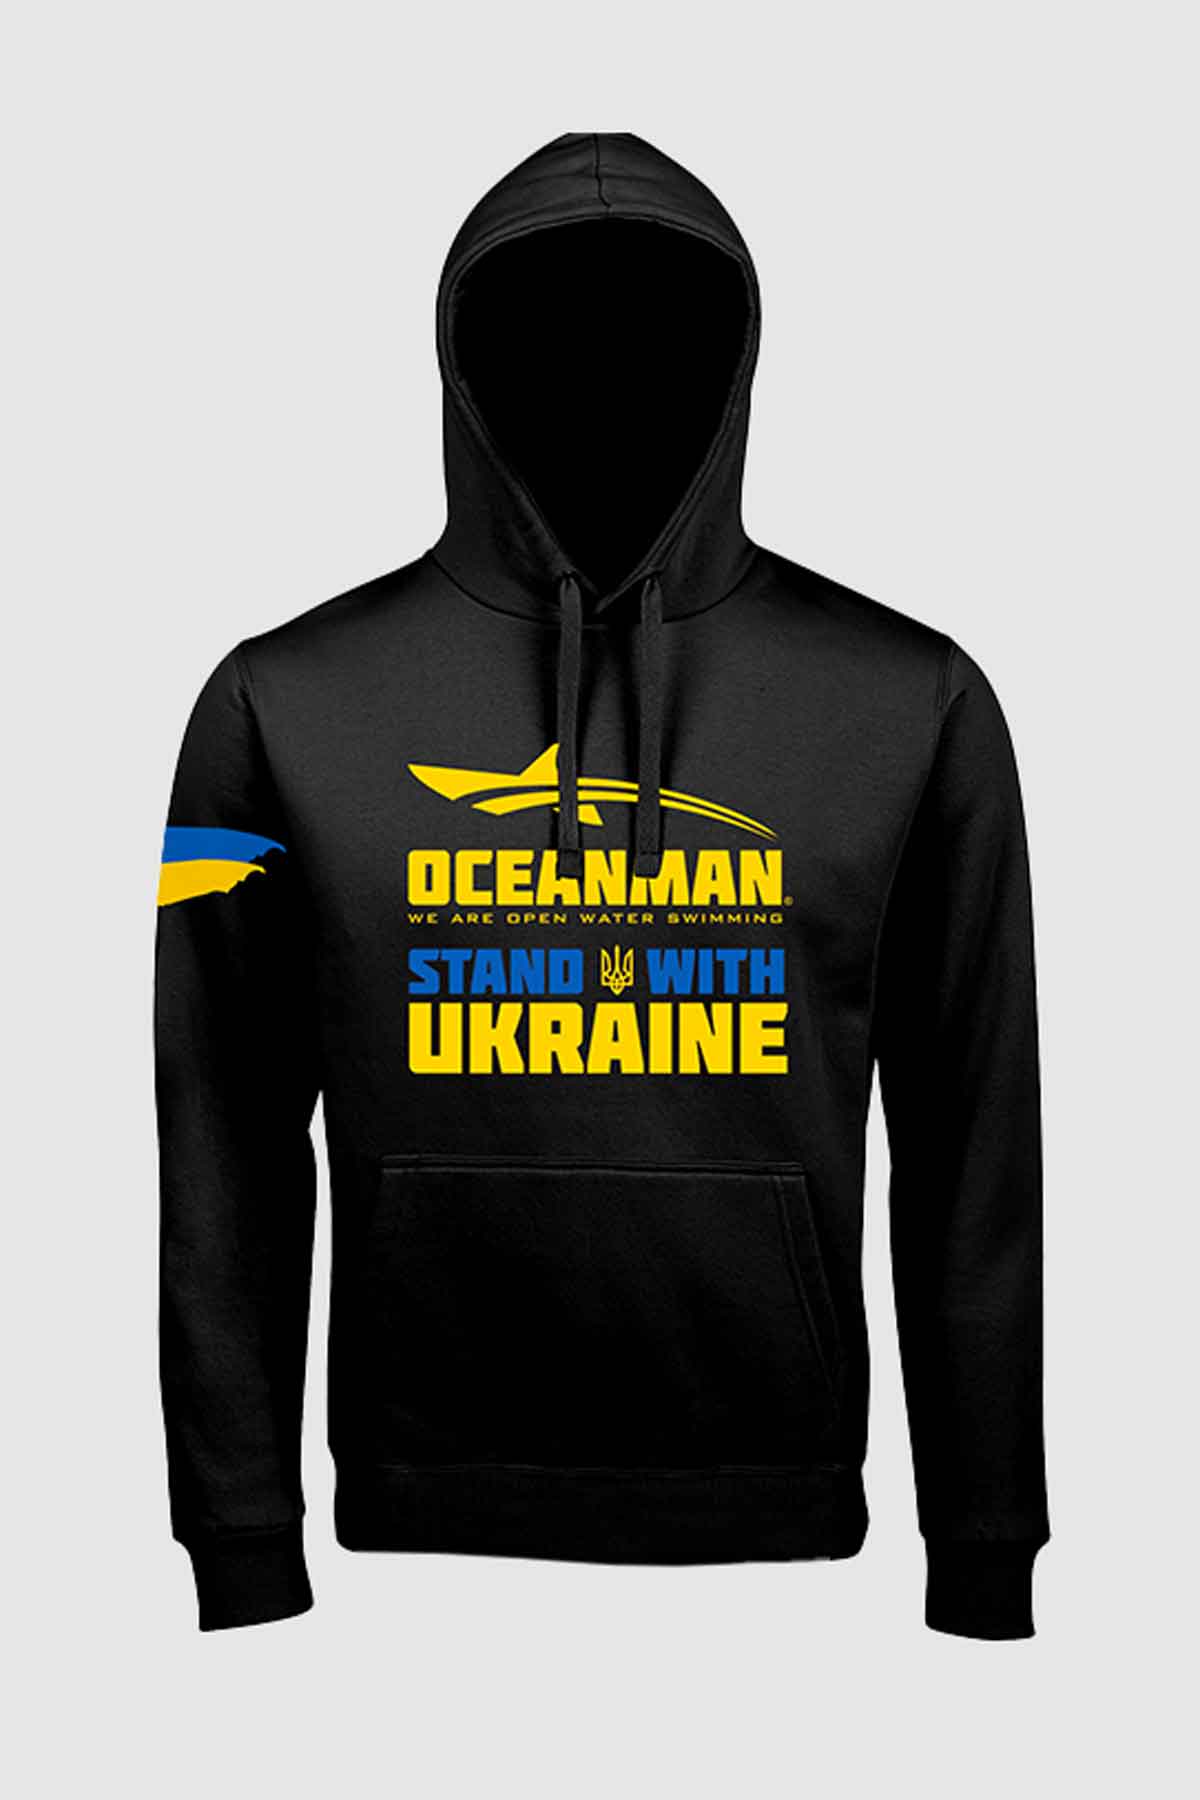 Oceanman ukraine collection collection black men hoodie